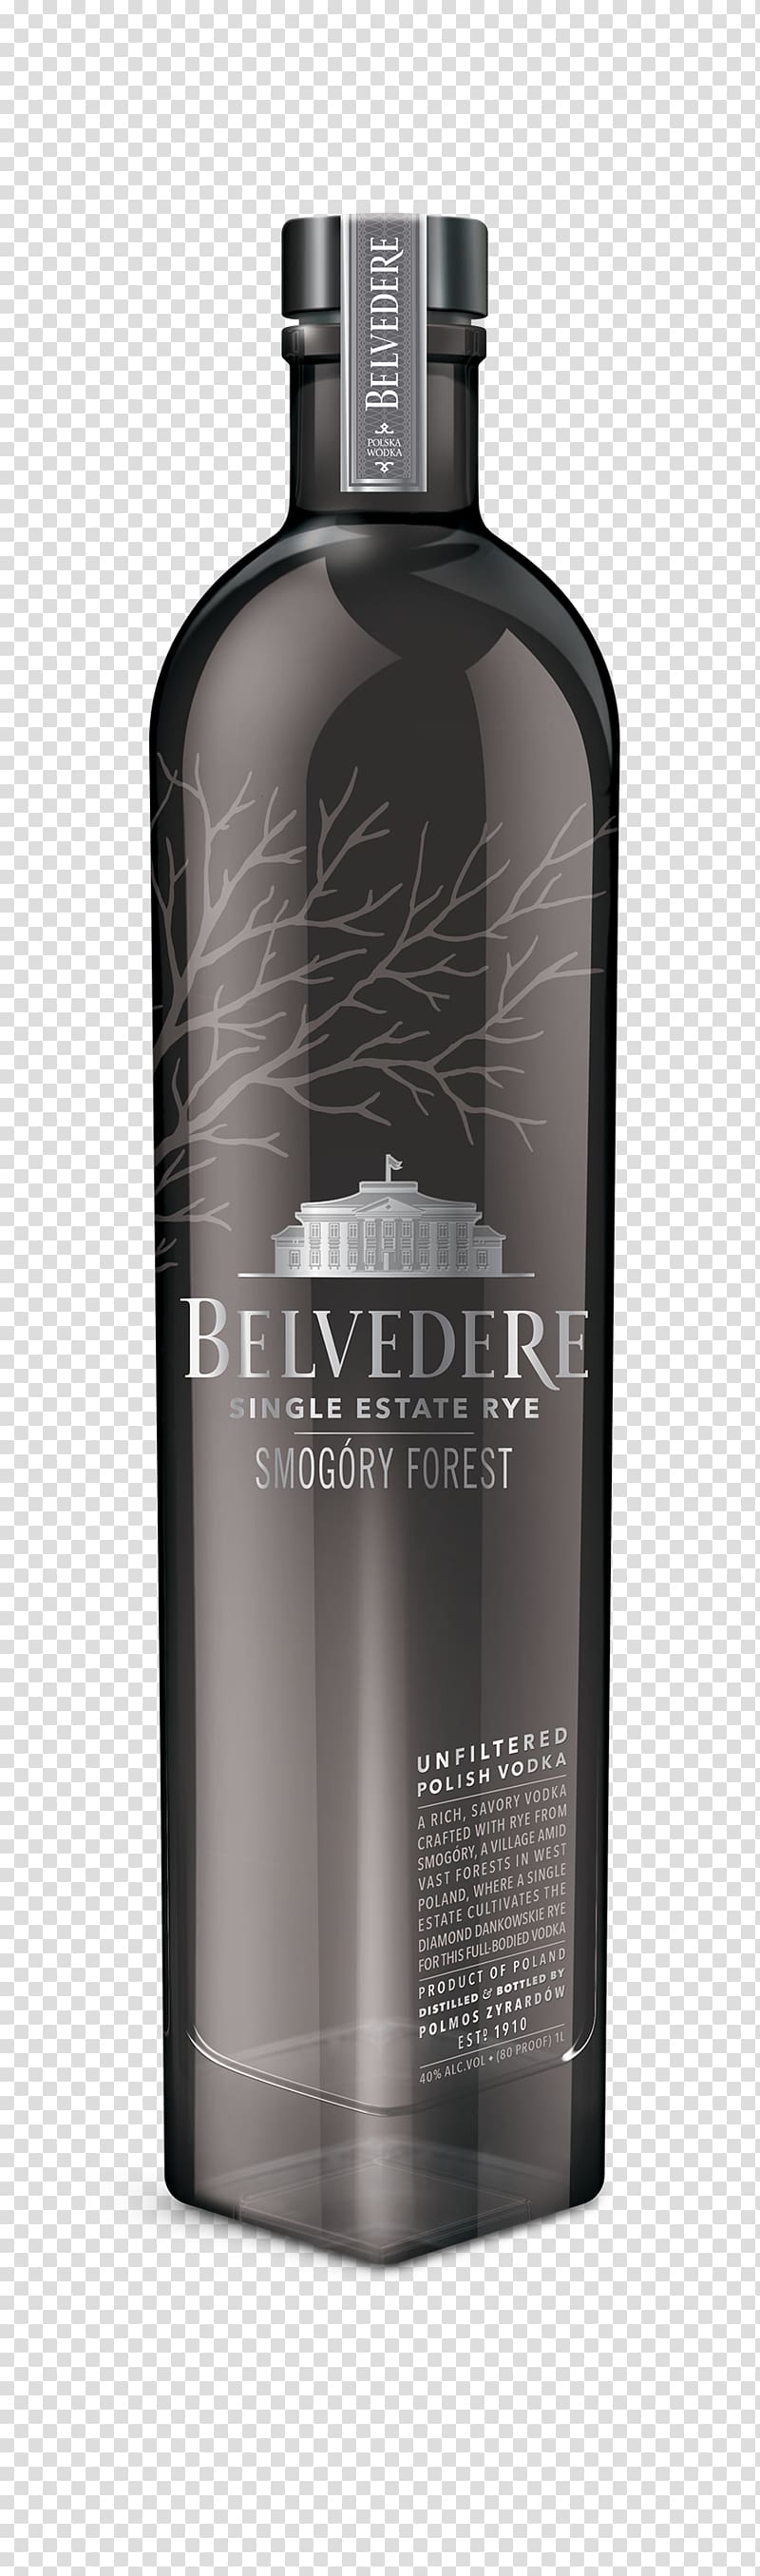 Belvedere Vodka Wine Smogóry Distilled beverage, vodka transparent background PNG clipart